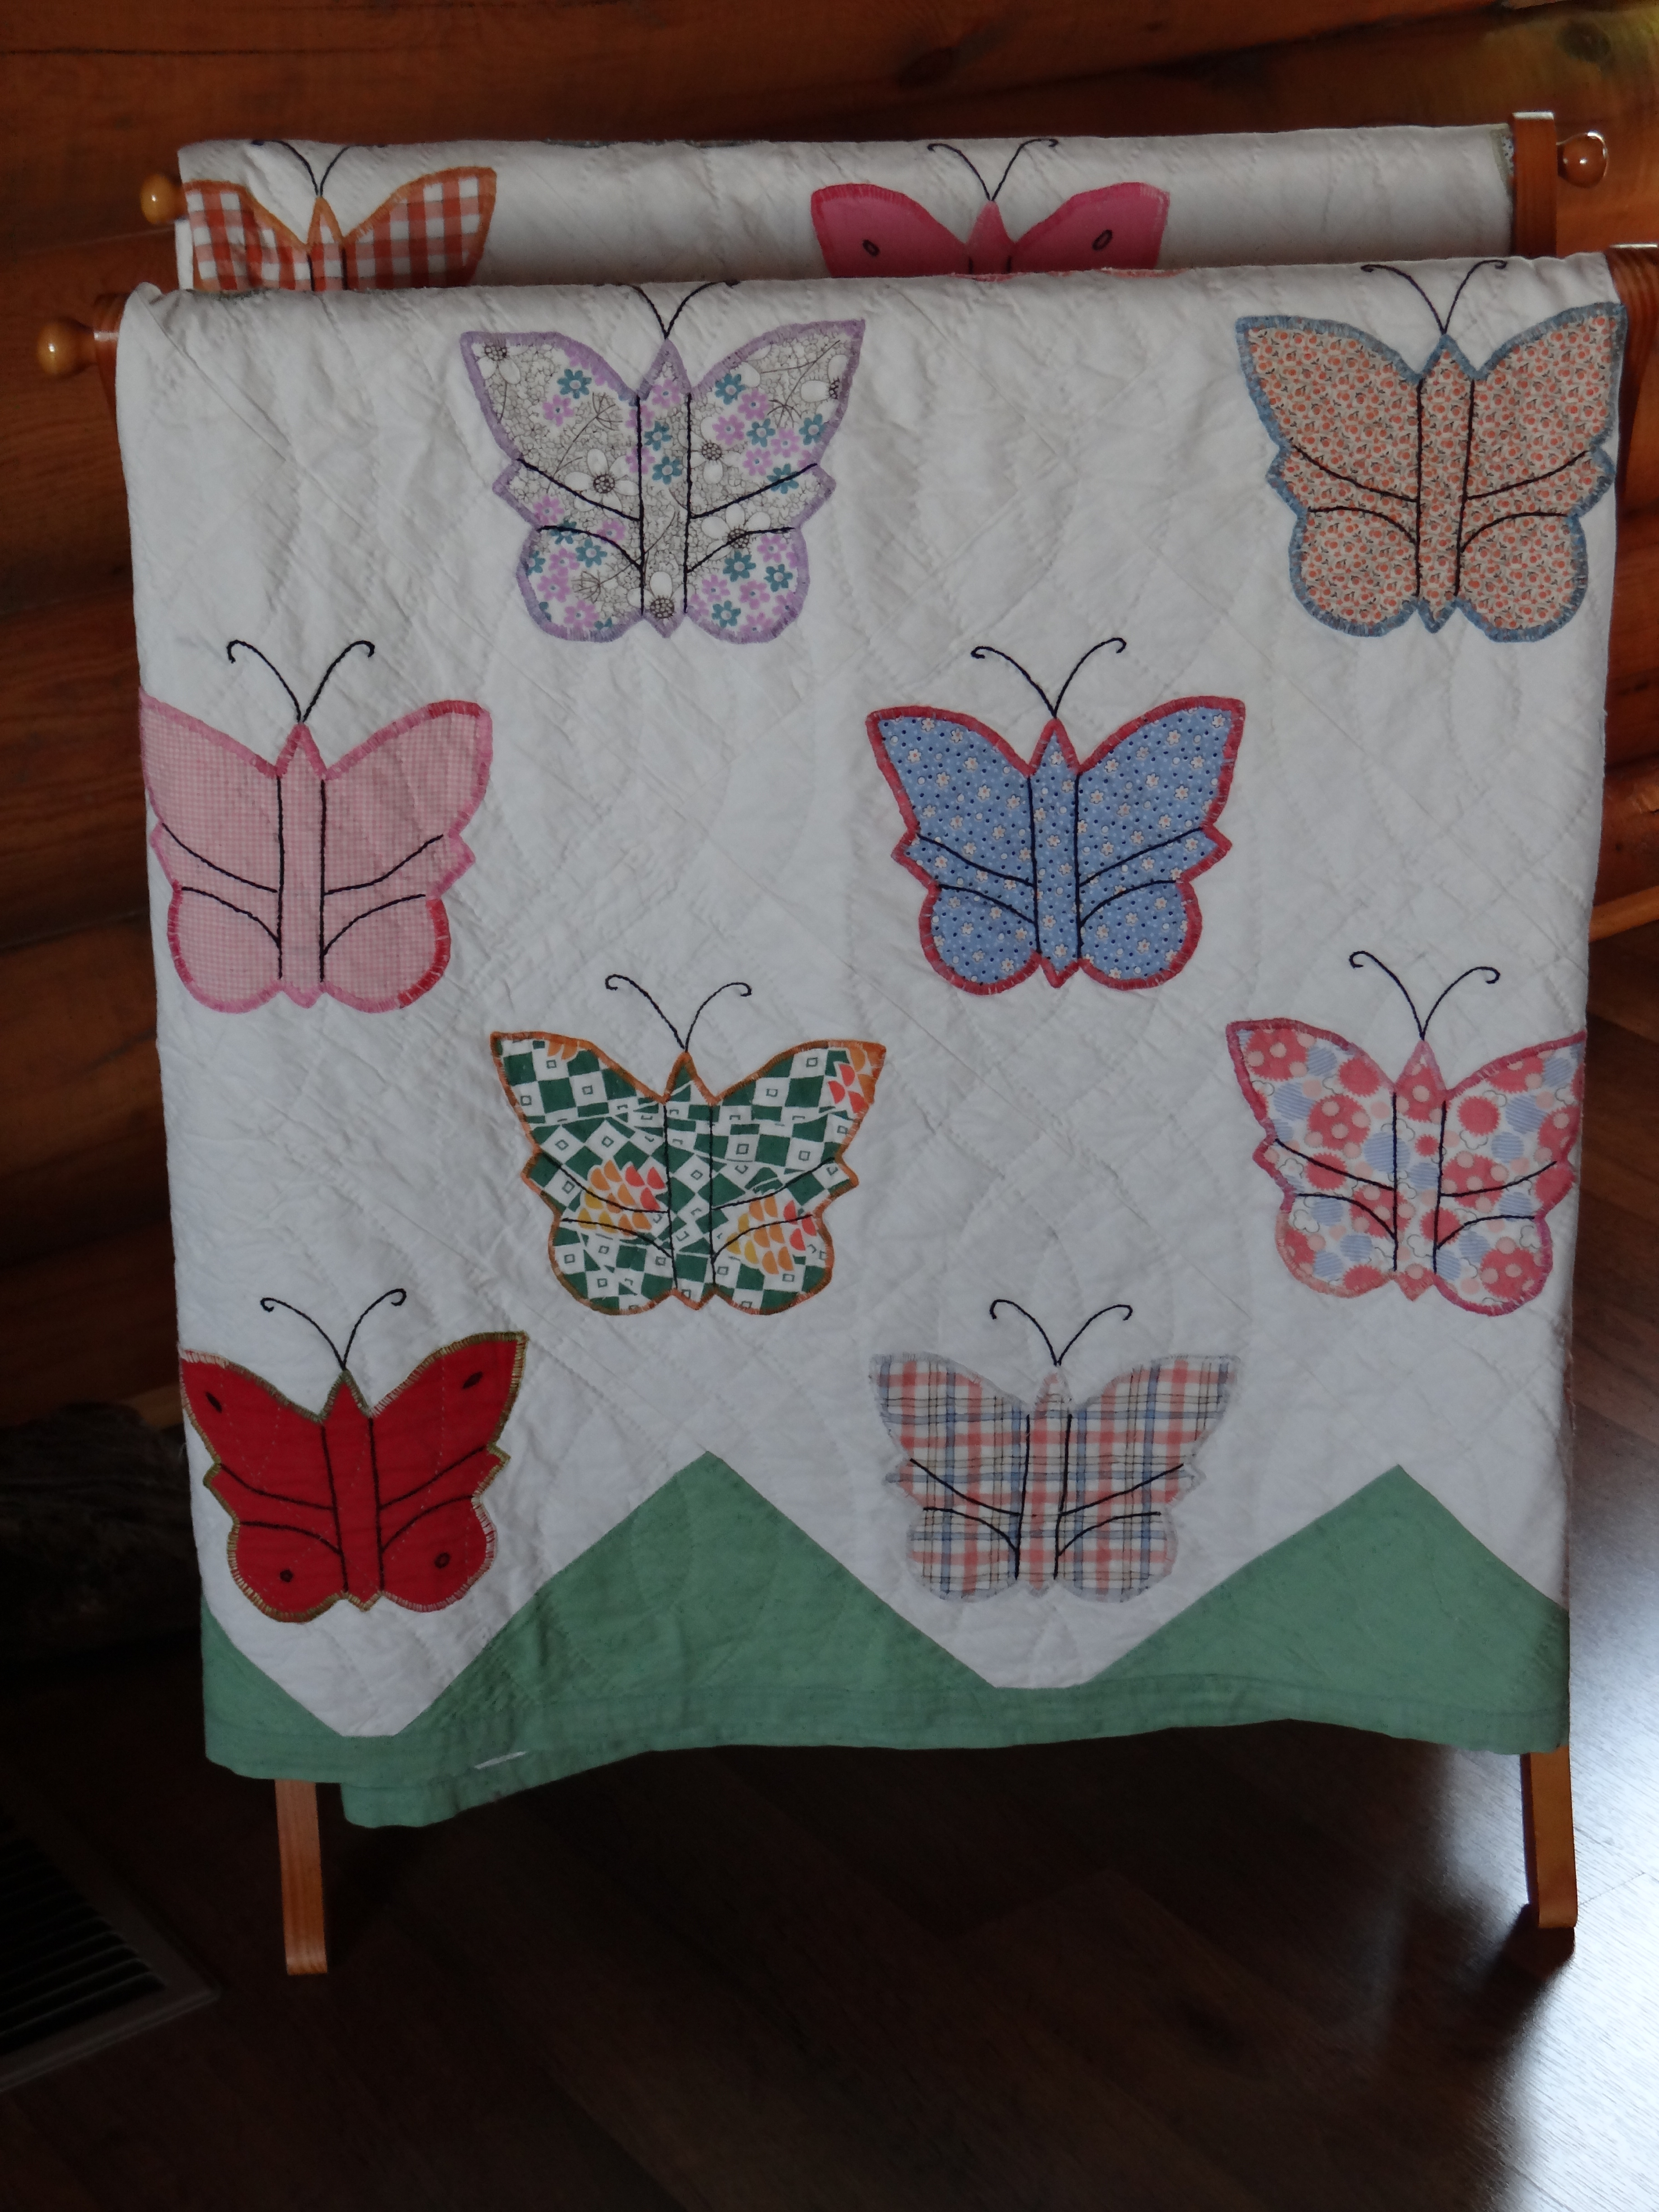 Grandma Schultz's quilt